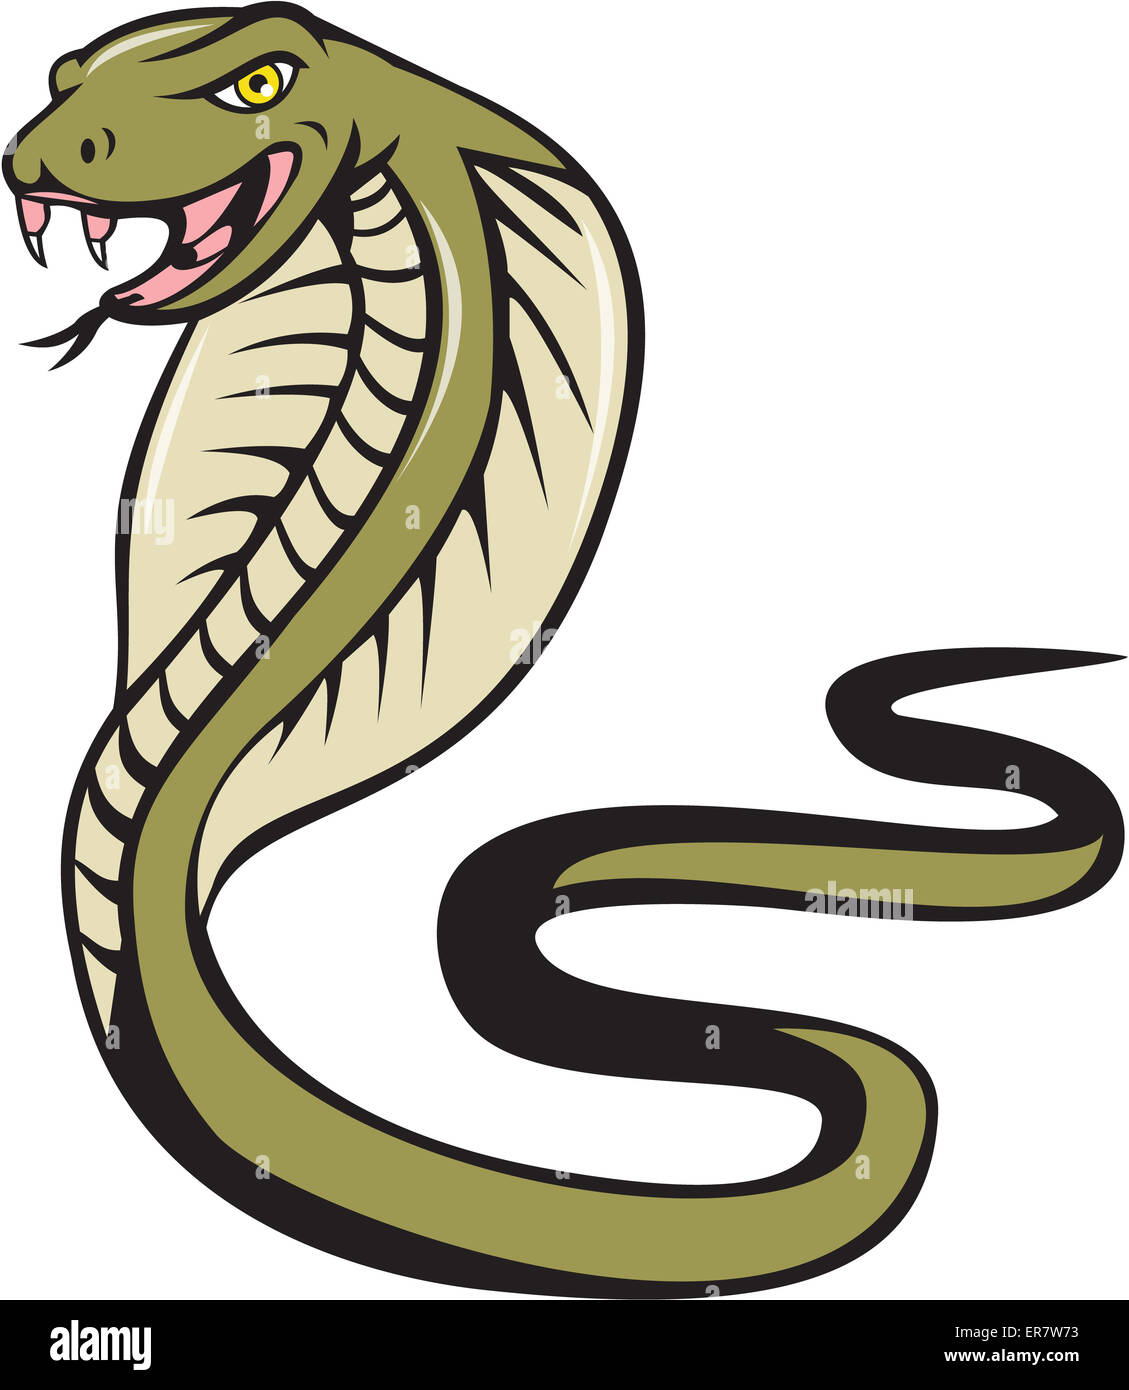 Ilustración de un viper cobra SERPIENTE SERPIENTE con lengua atacando visto desde el lado establecer sobre fondo blanco aislado realizado en estilo de dibujos animados. Foto de stock